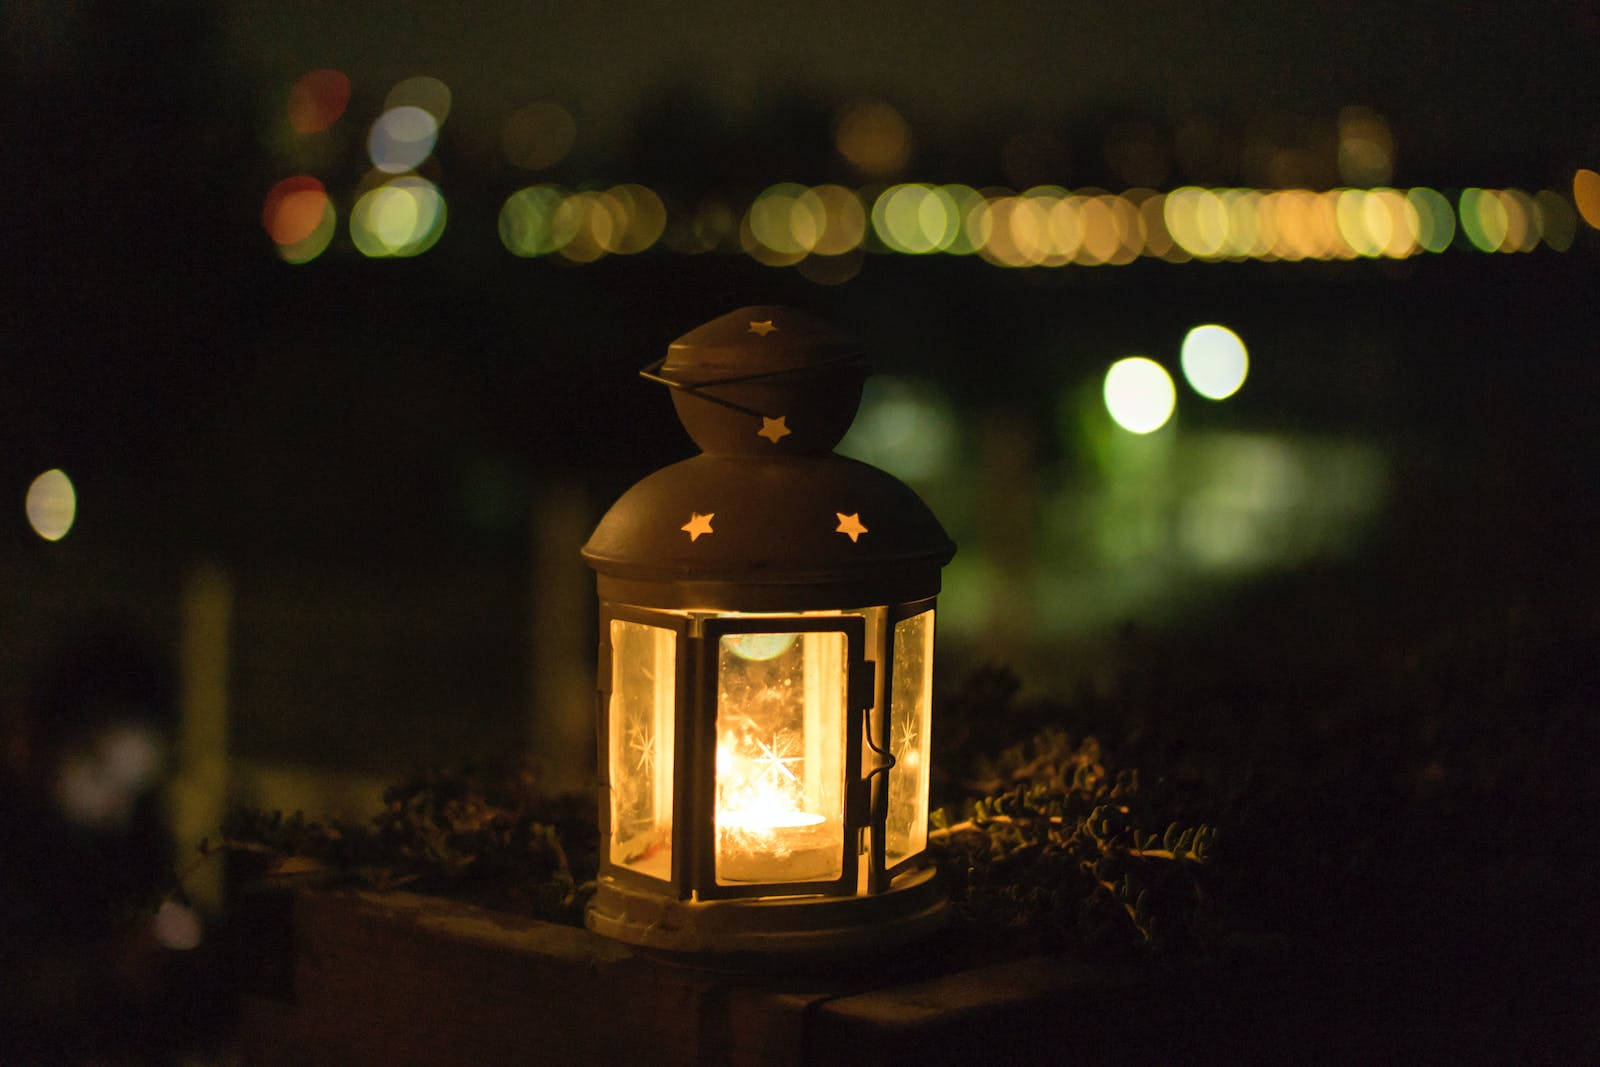 Celebrating Eid Mubarak - Illuminating Lanterns And Crescent Moon